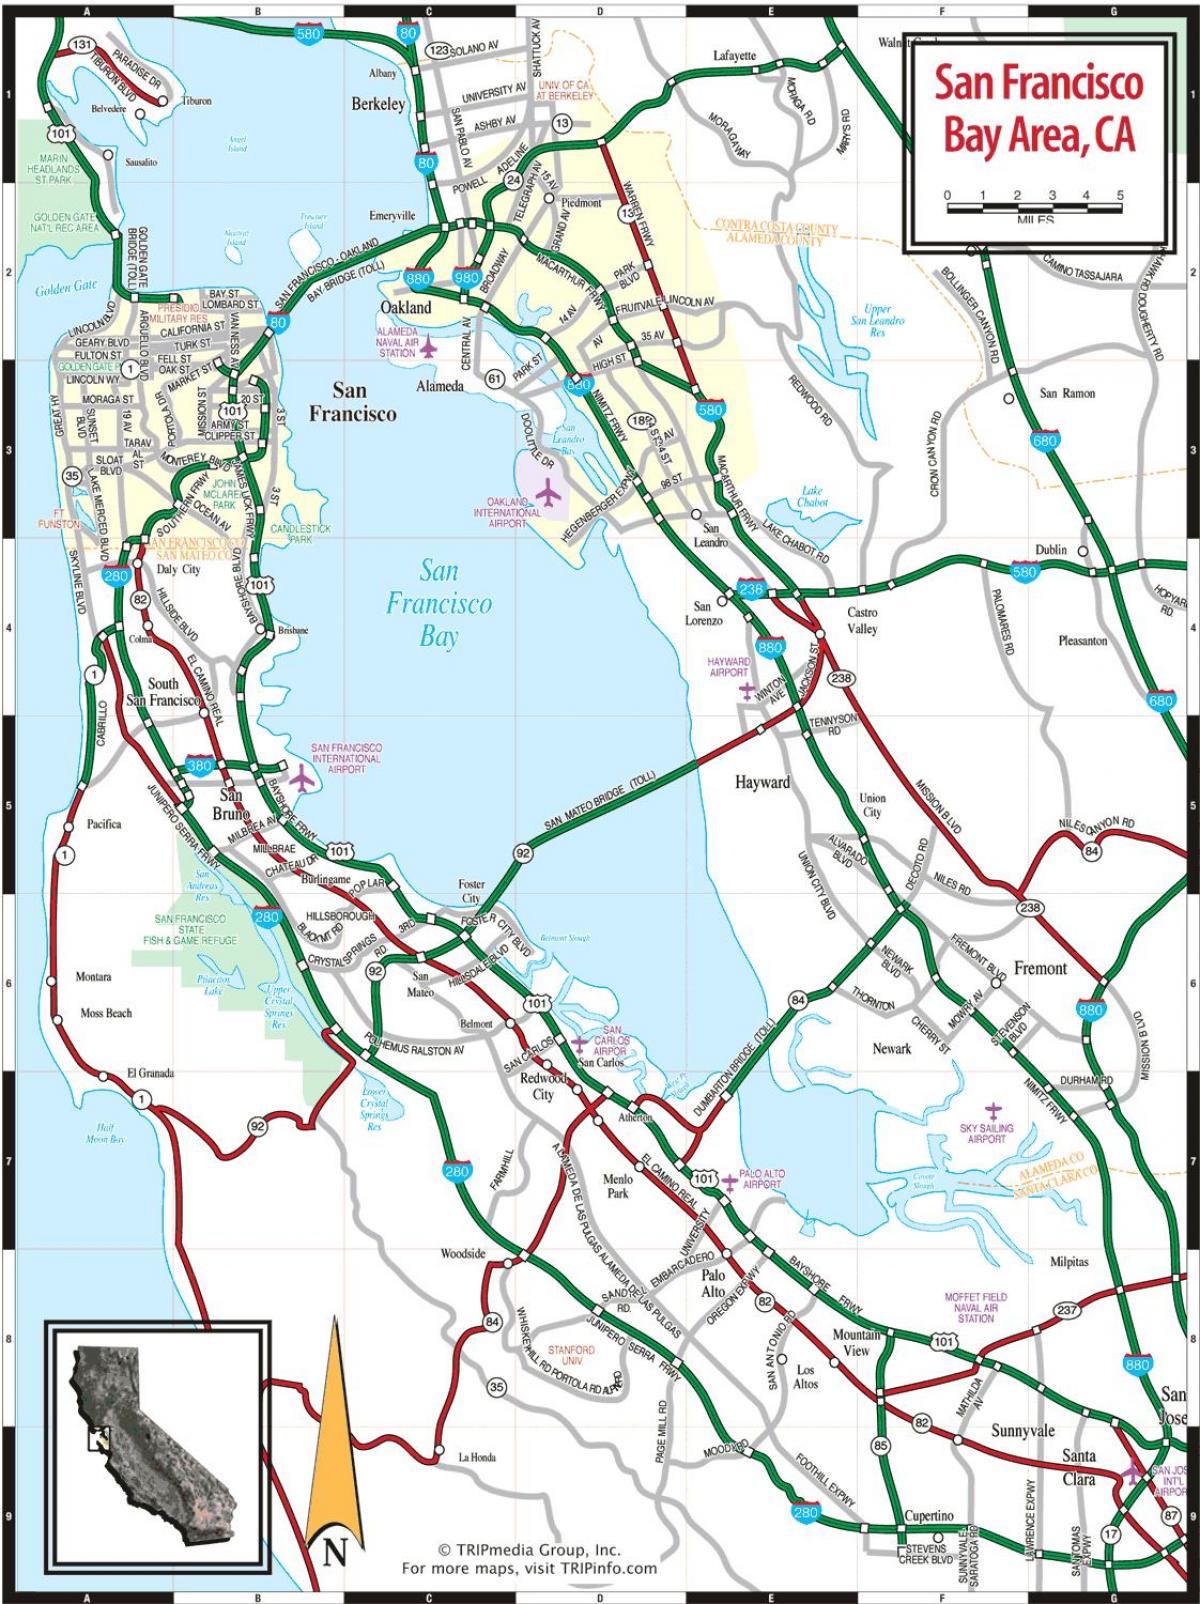 מפה של אזור מפרץ סן פרנסיסקו